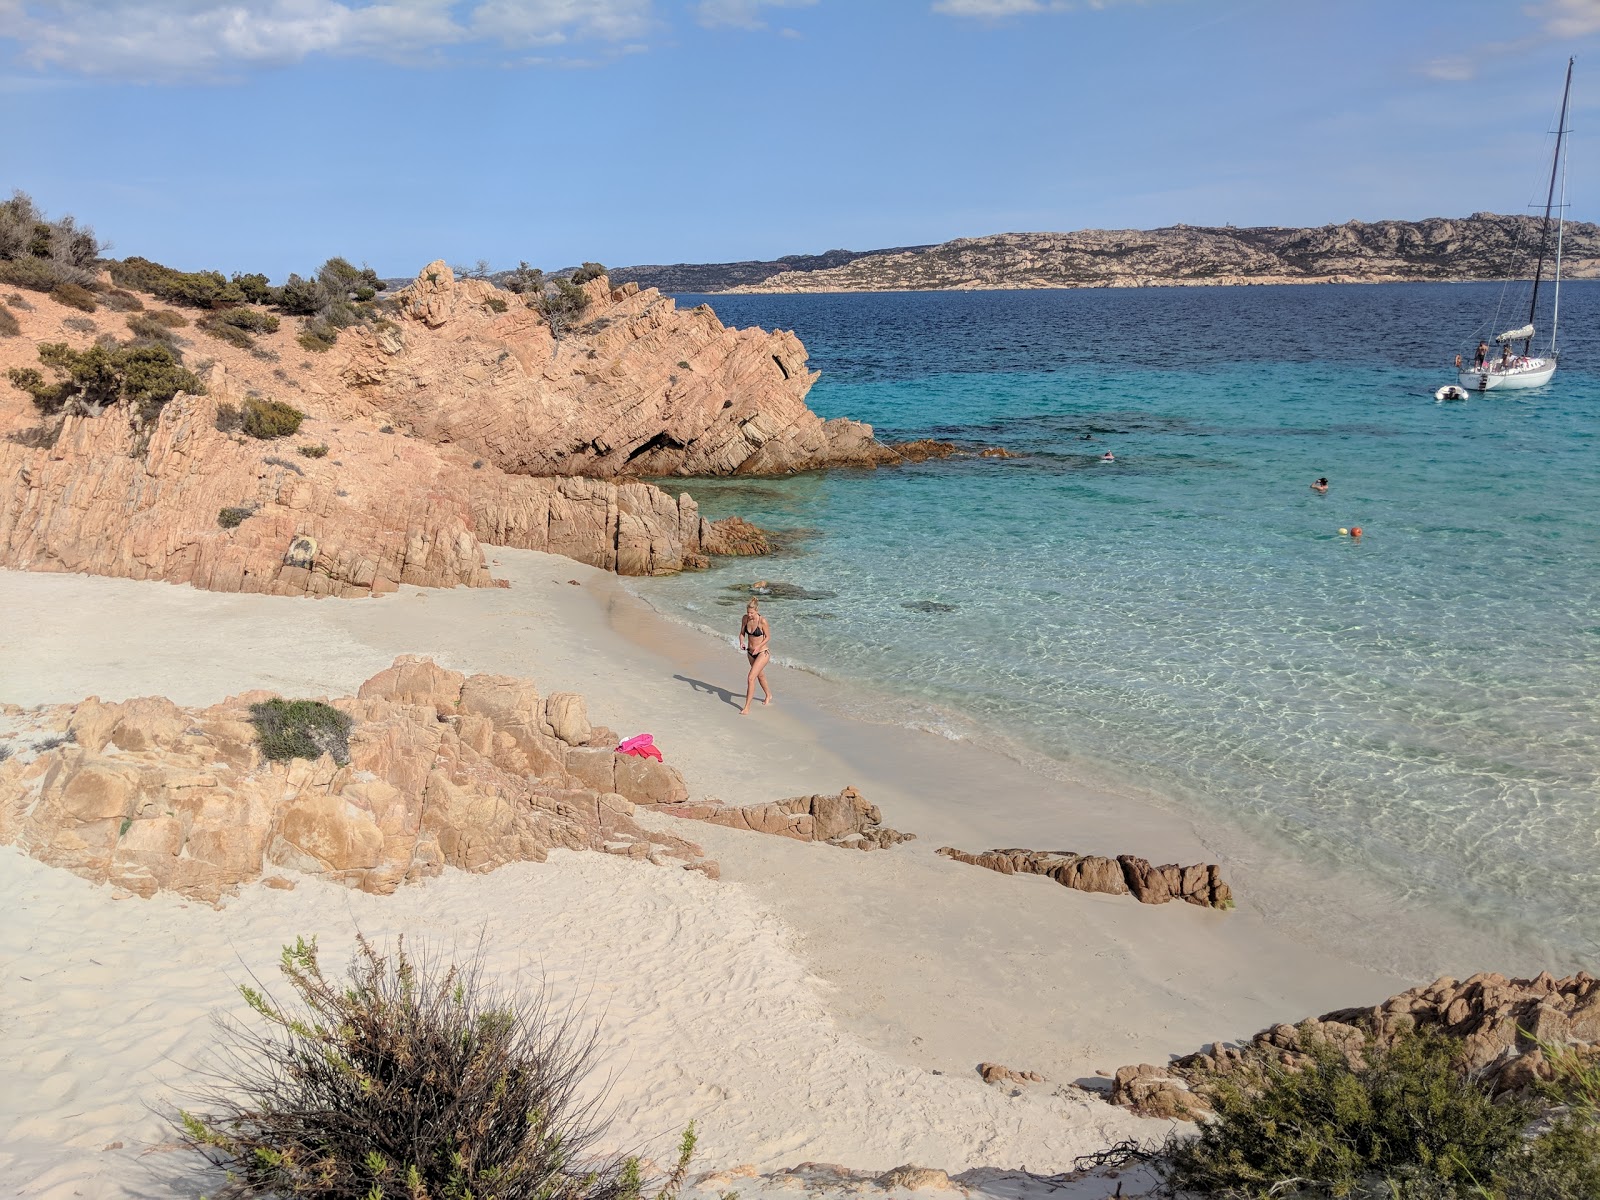 Cala Soraya Plajı'in fotoğrafı parlak ince kum yüzey ile